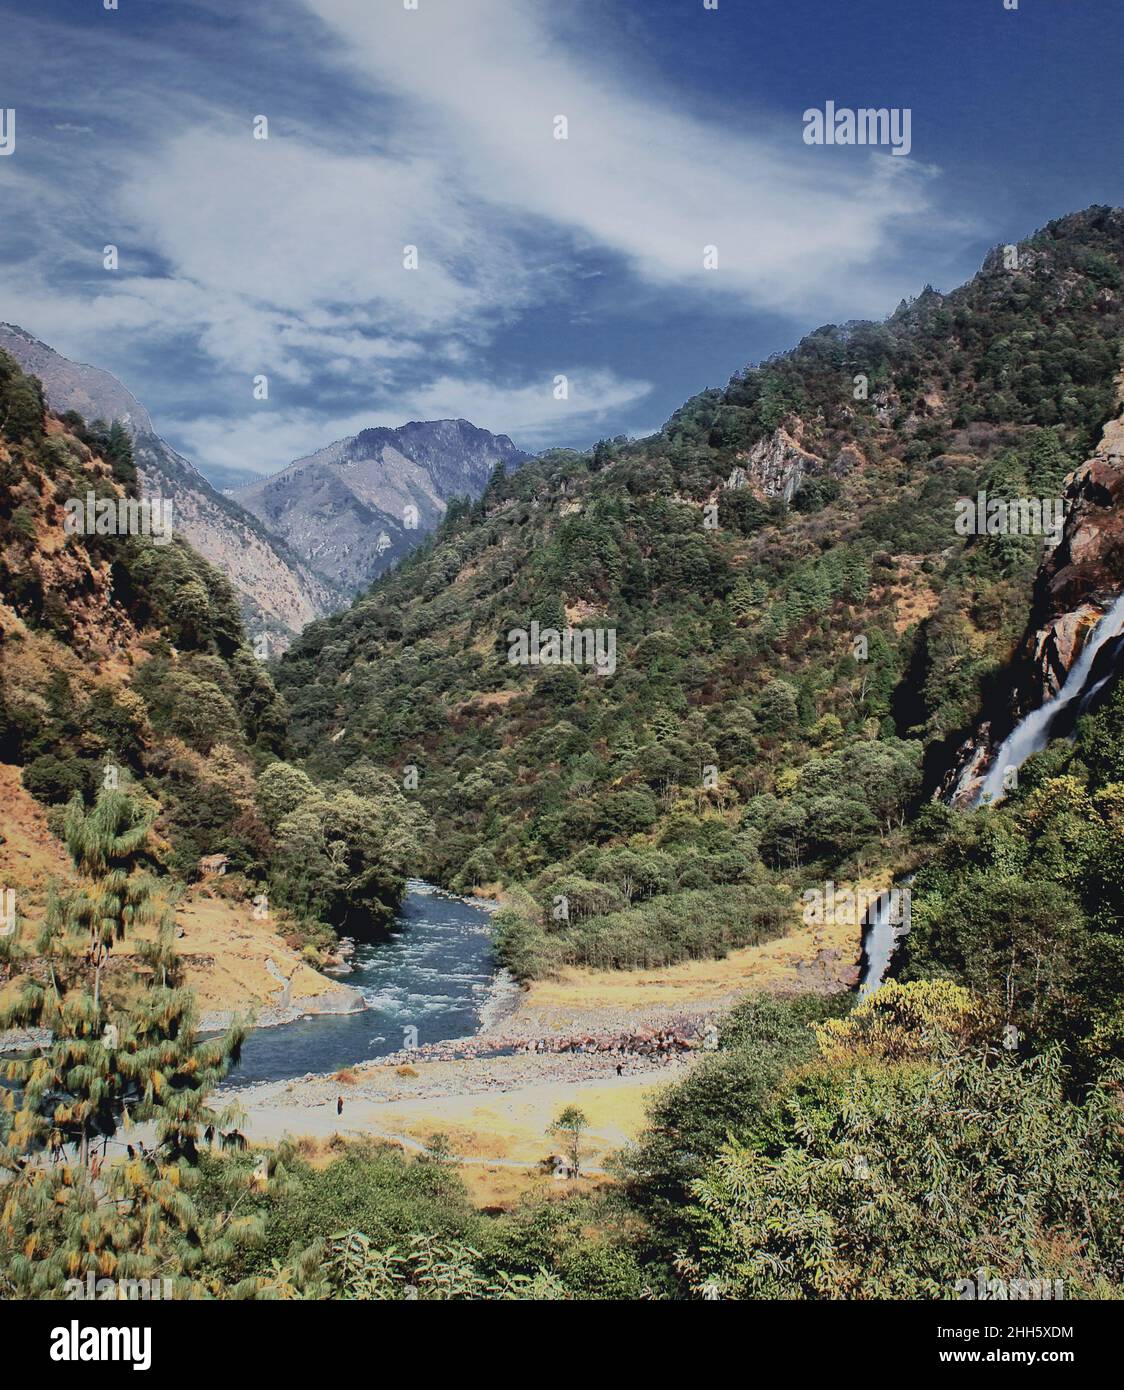 Malerische Berglandschaft und Nuranang Wasserfall in der Nähe tawang Bergstation in arunachal pradesh, nordostindien Stockfoto